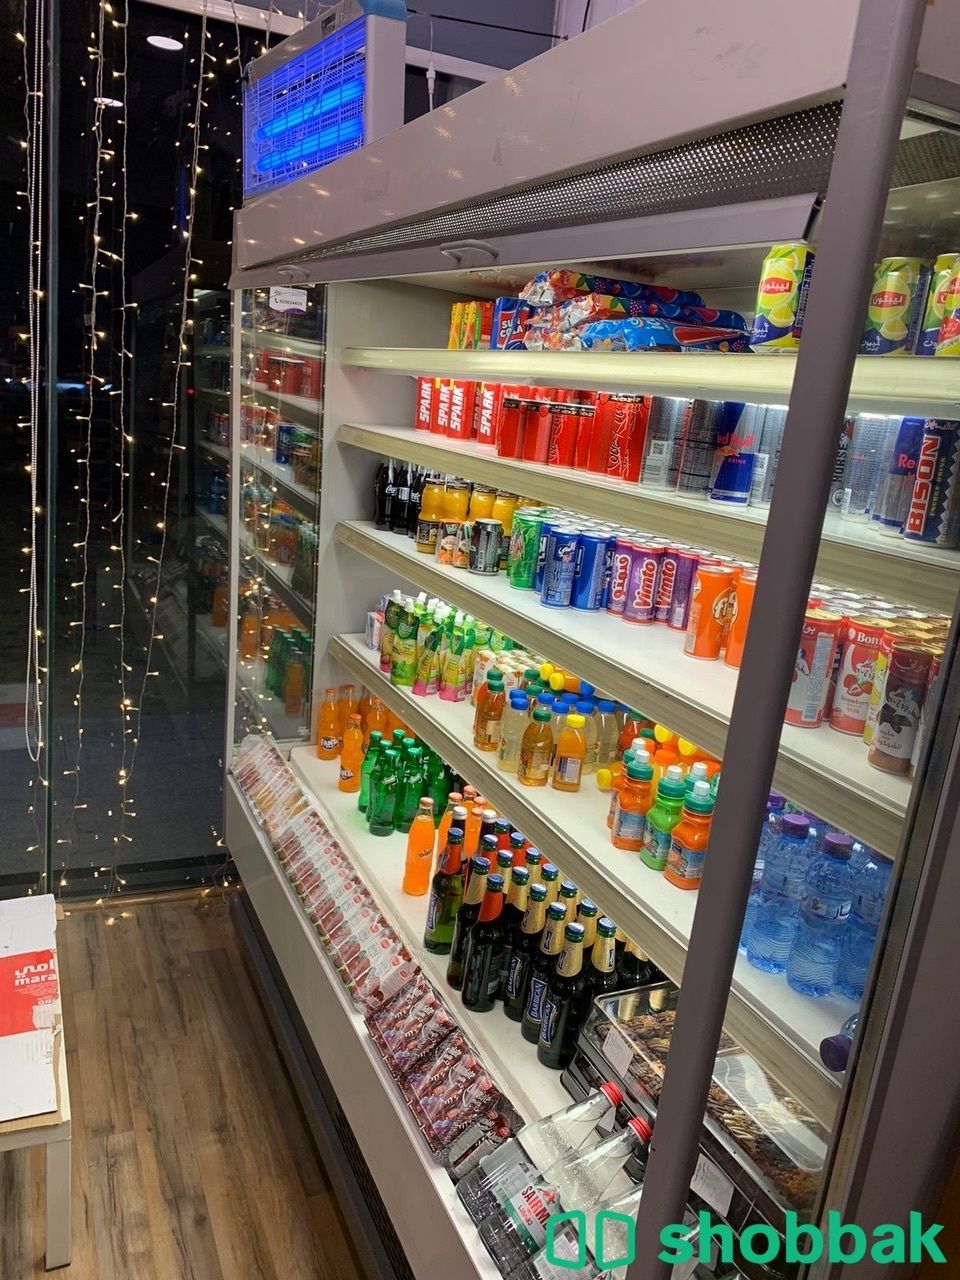 محل حلويات باليرموك للتقبيل لعدم التفرغ شباك السعودية